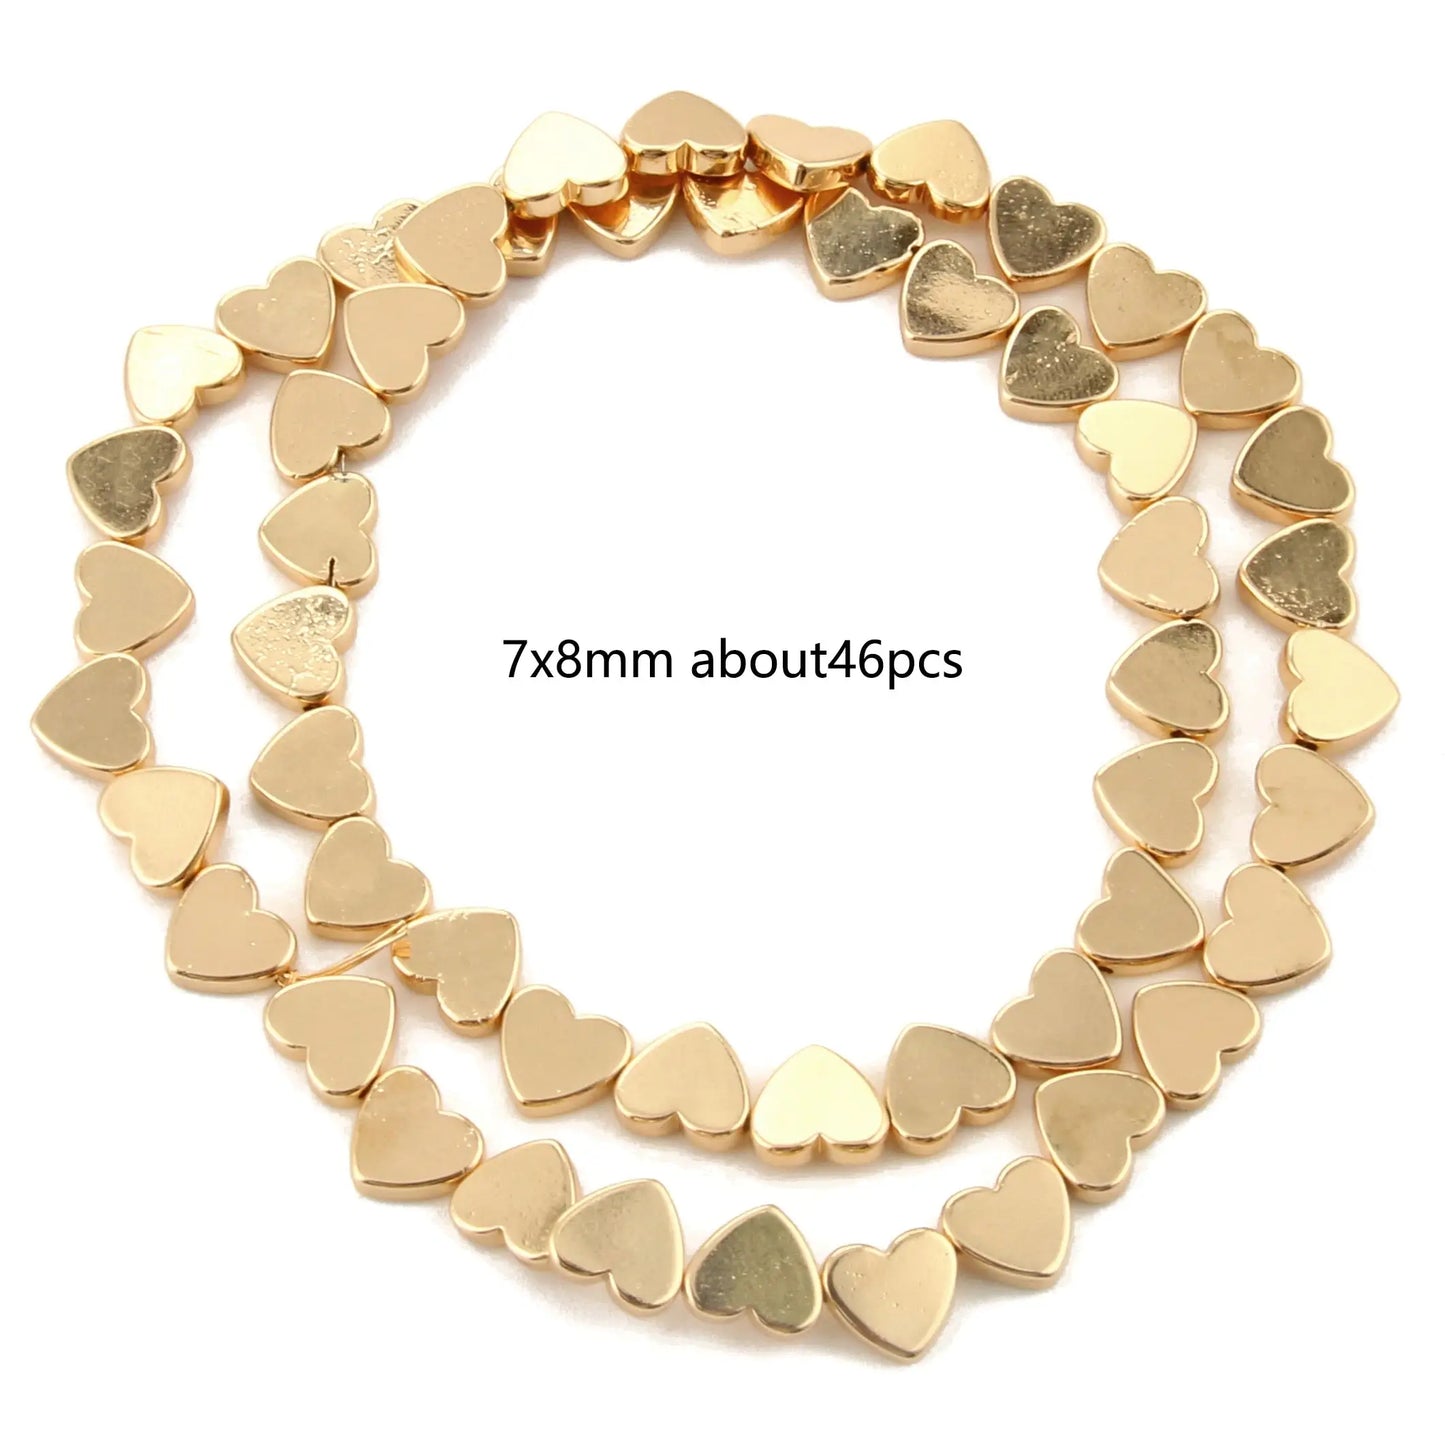 Perles naturelles en hématite de tailles irrégulières - 14K gold 14